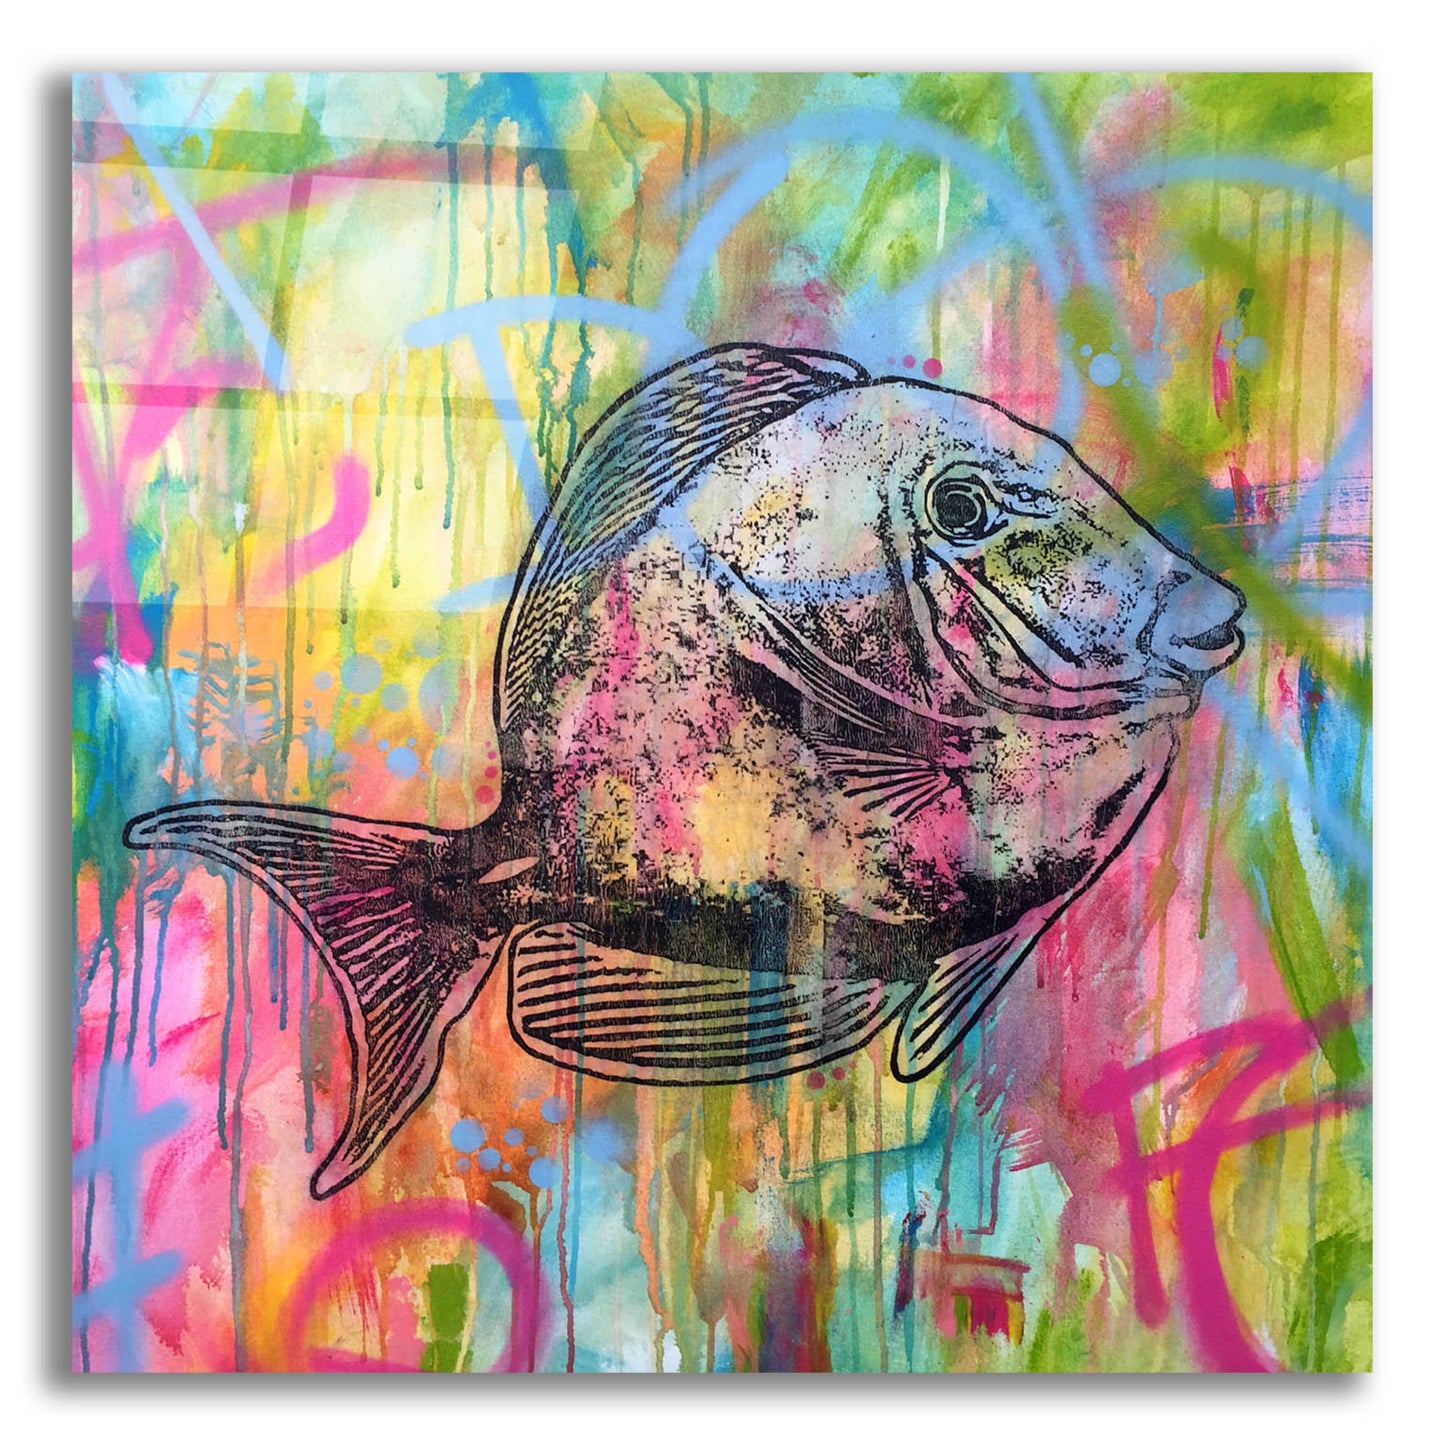 Epic Art 'Fishy Spray' by Dean Russo, Acrylic Glass Wall Art,12x12